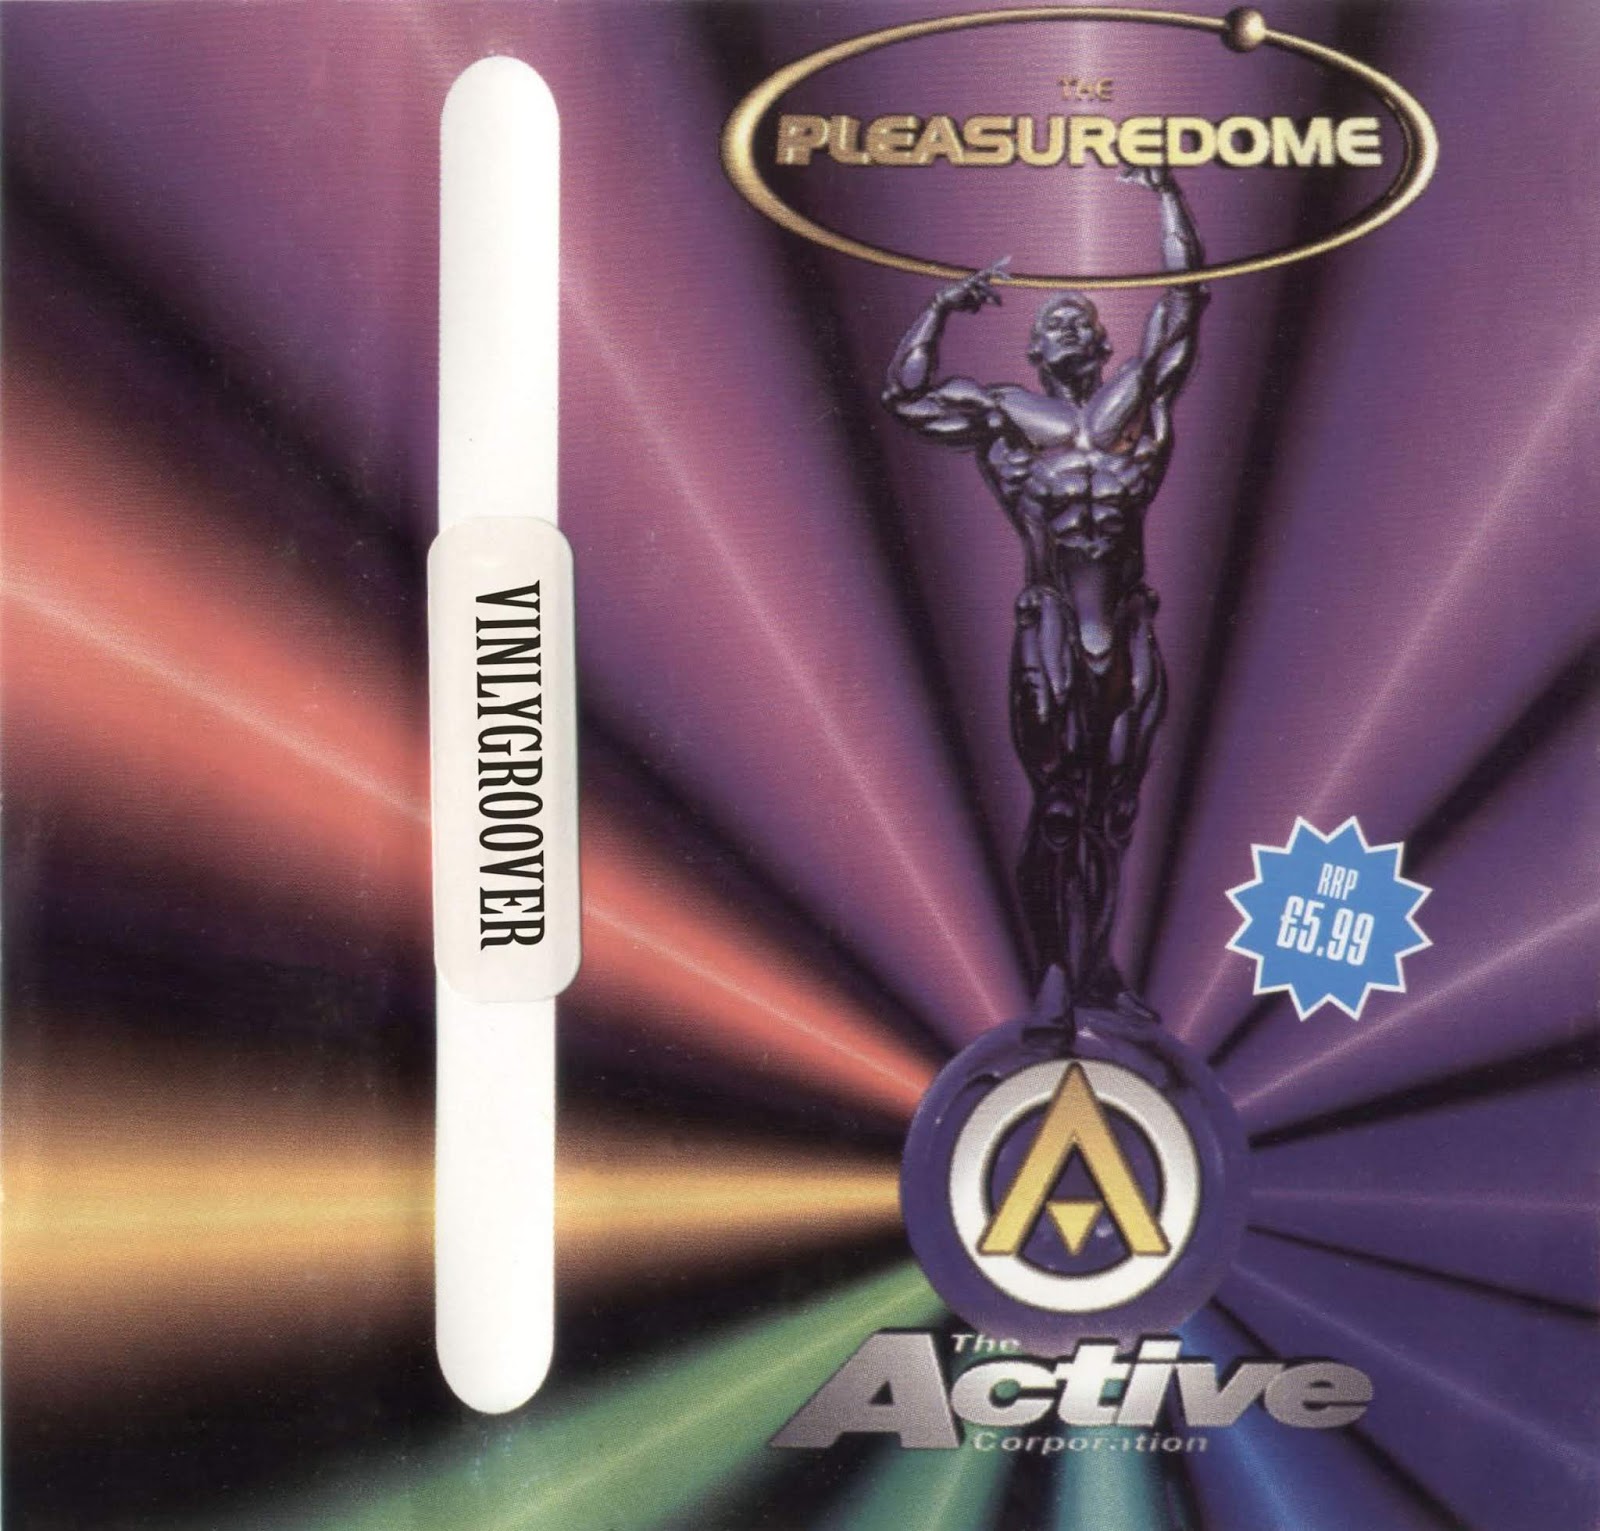 Pleasuredrome